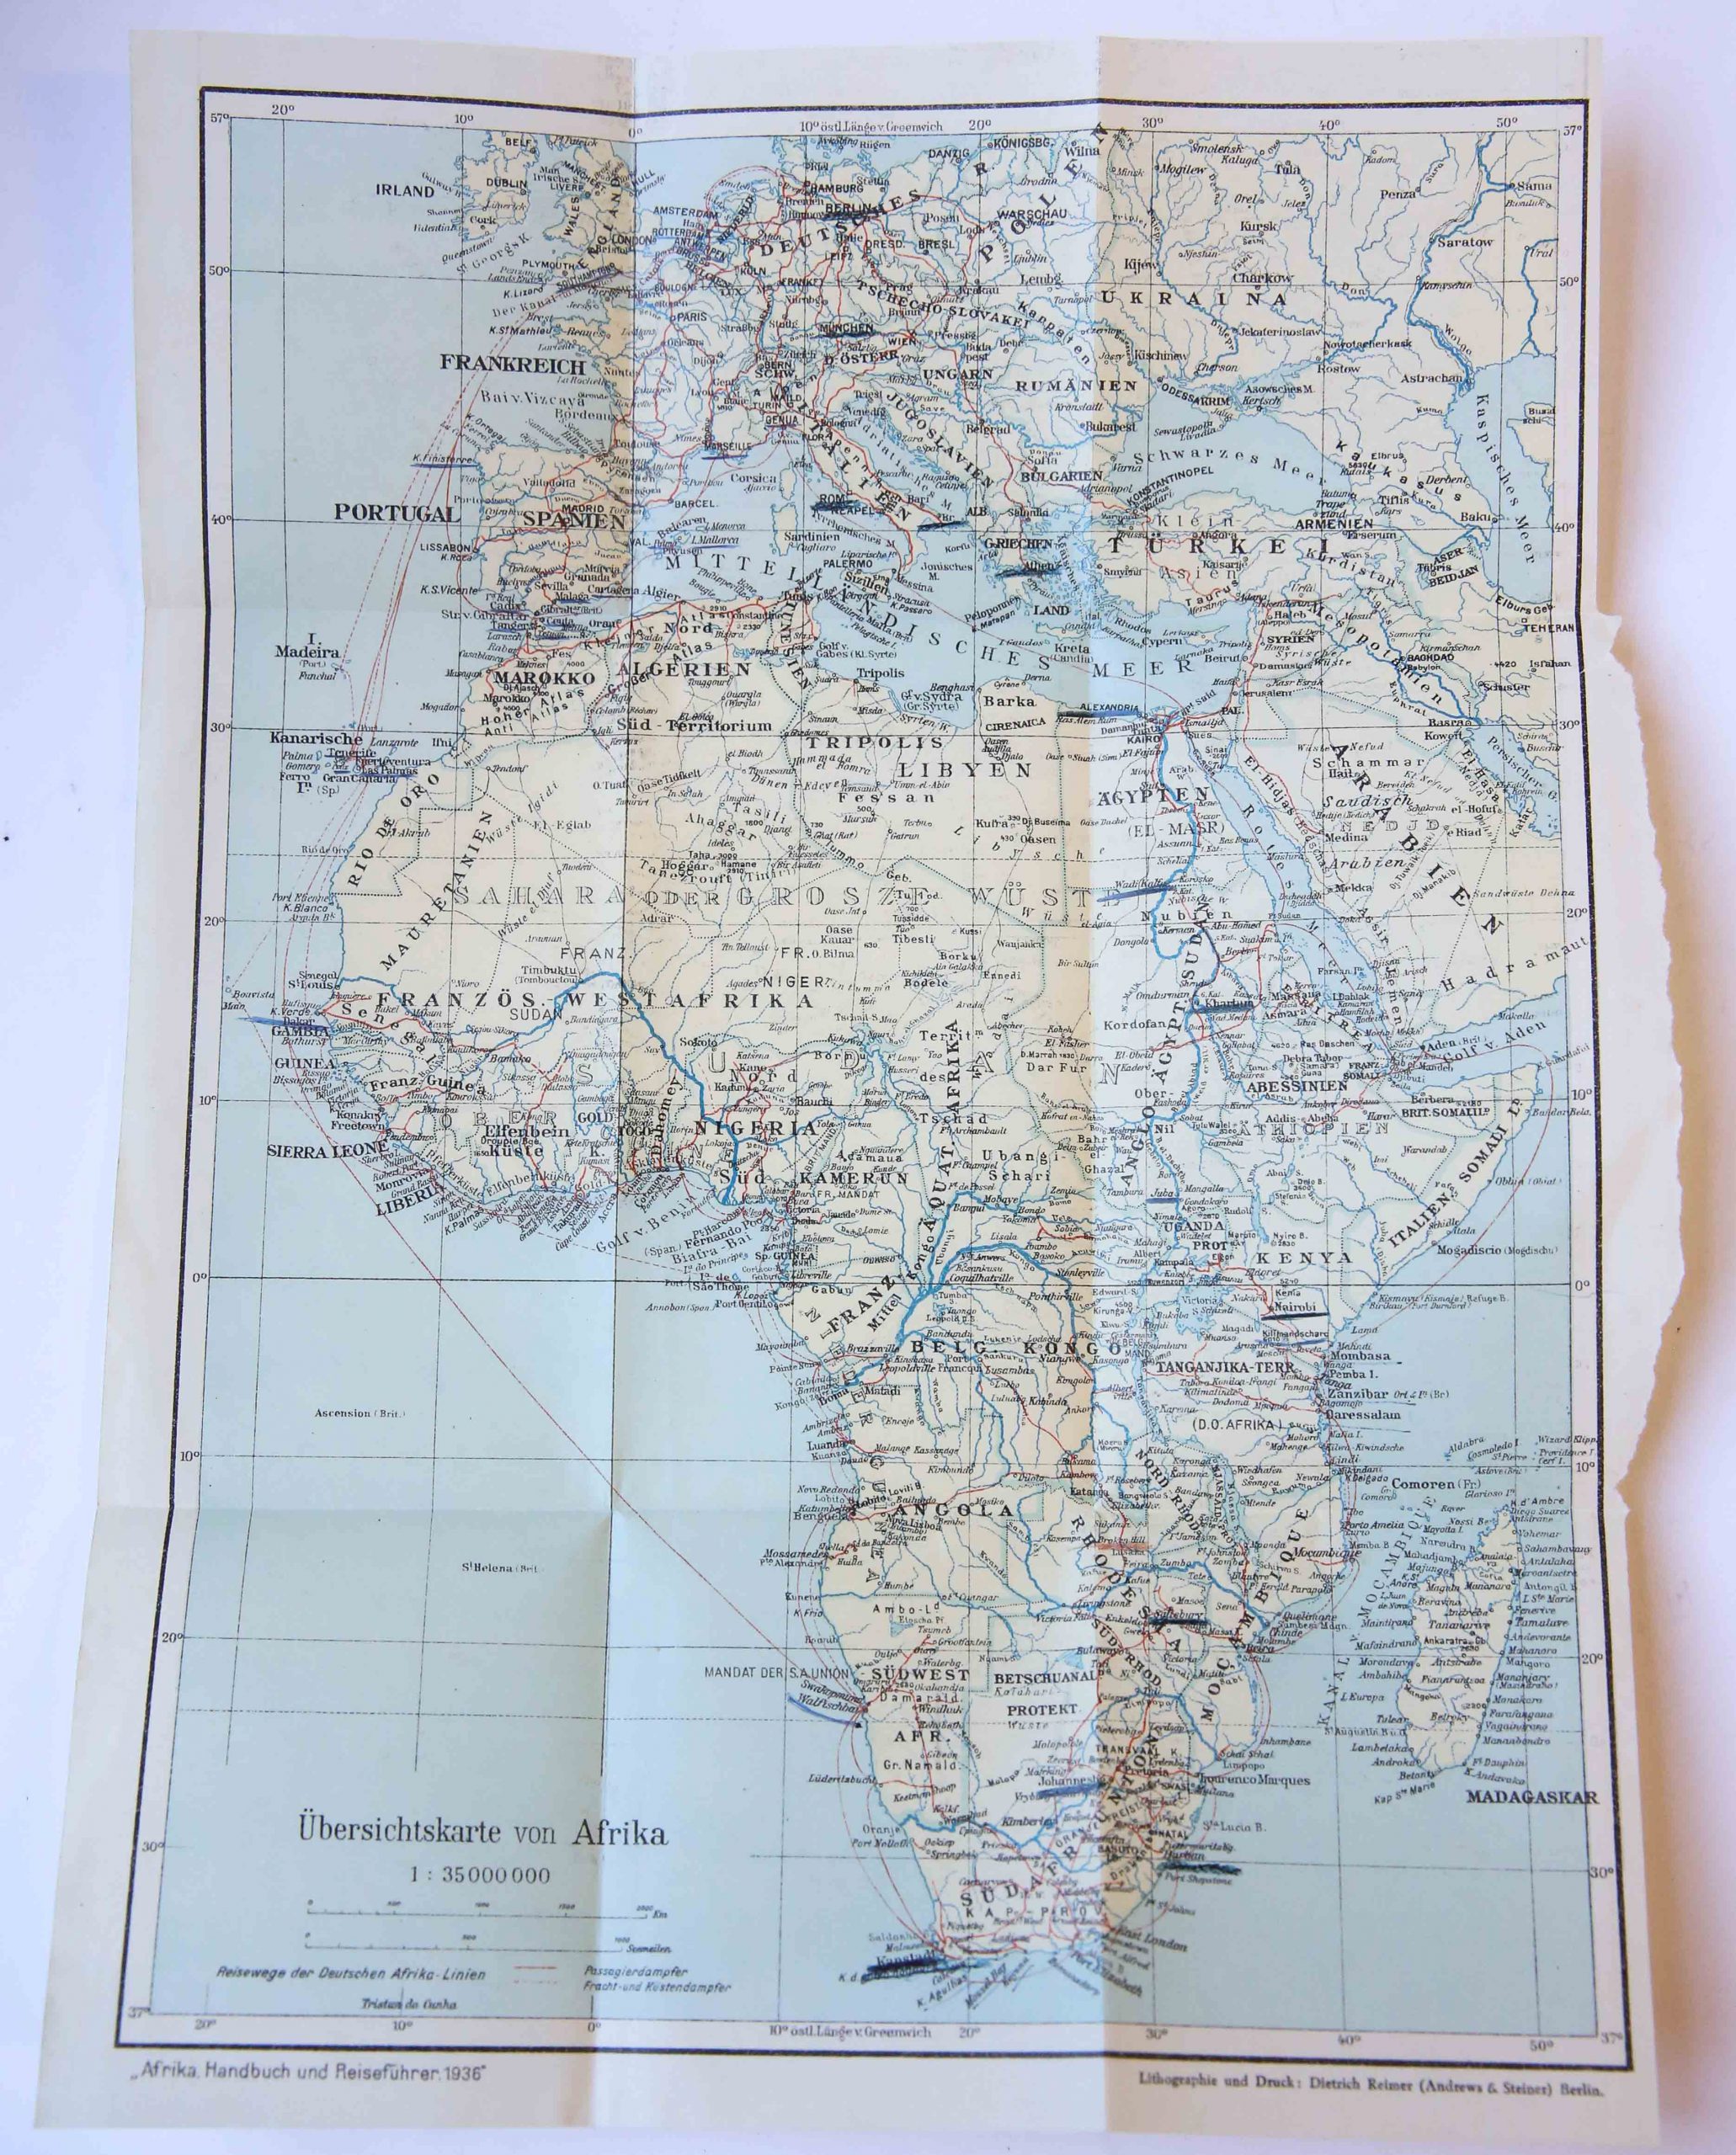 Cartography/Map: Übersichtkarte von Afrika. 1:35000000. 1 pp.